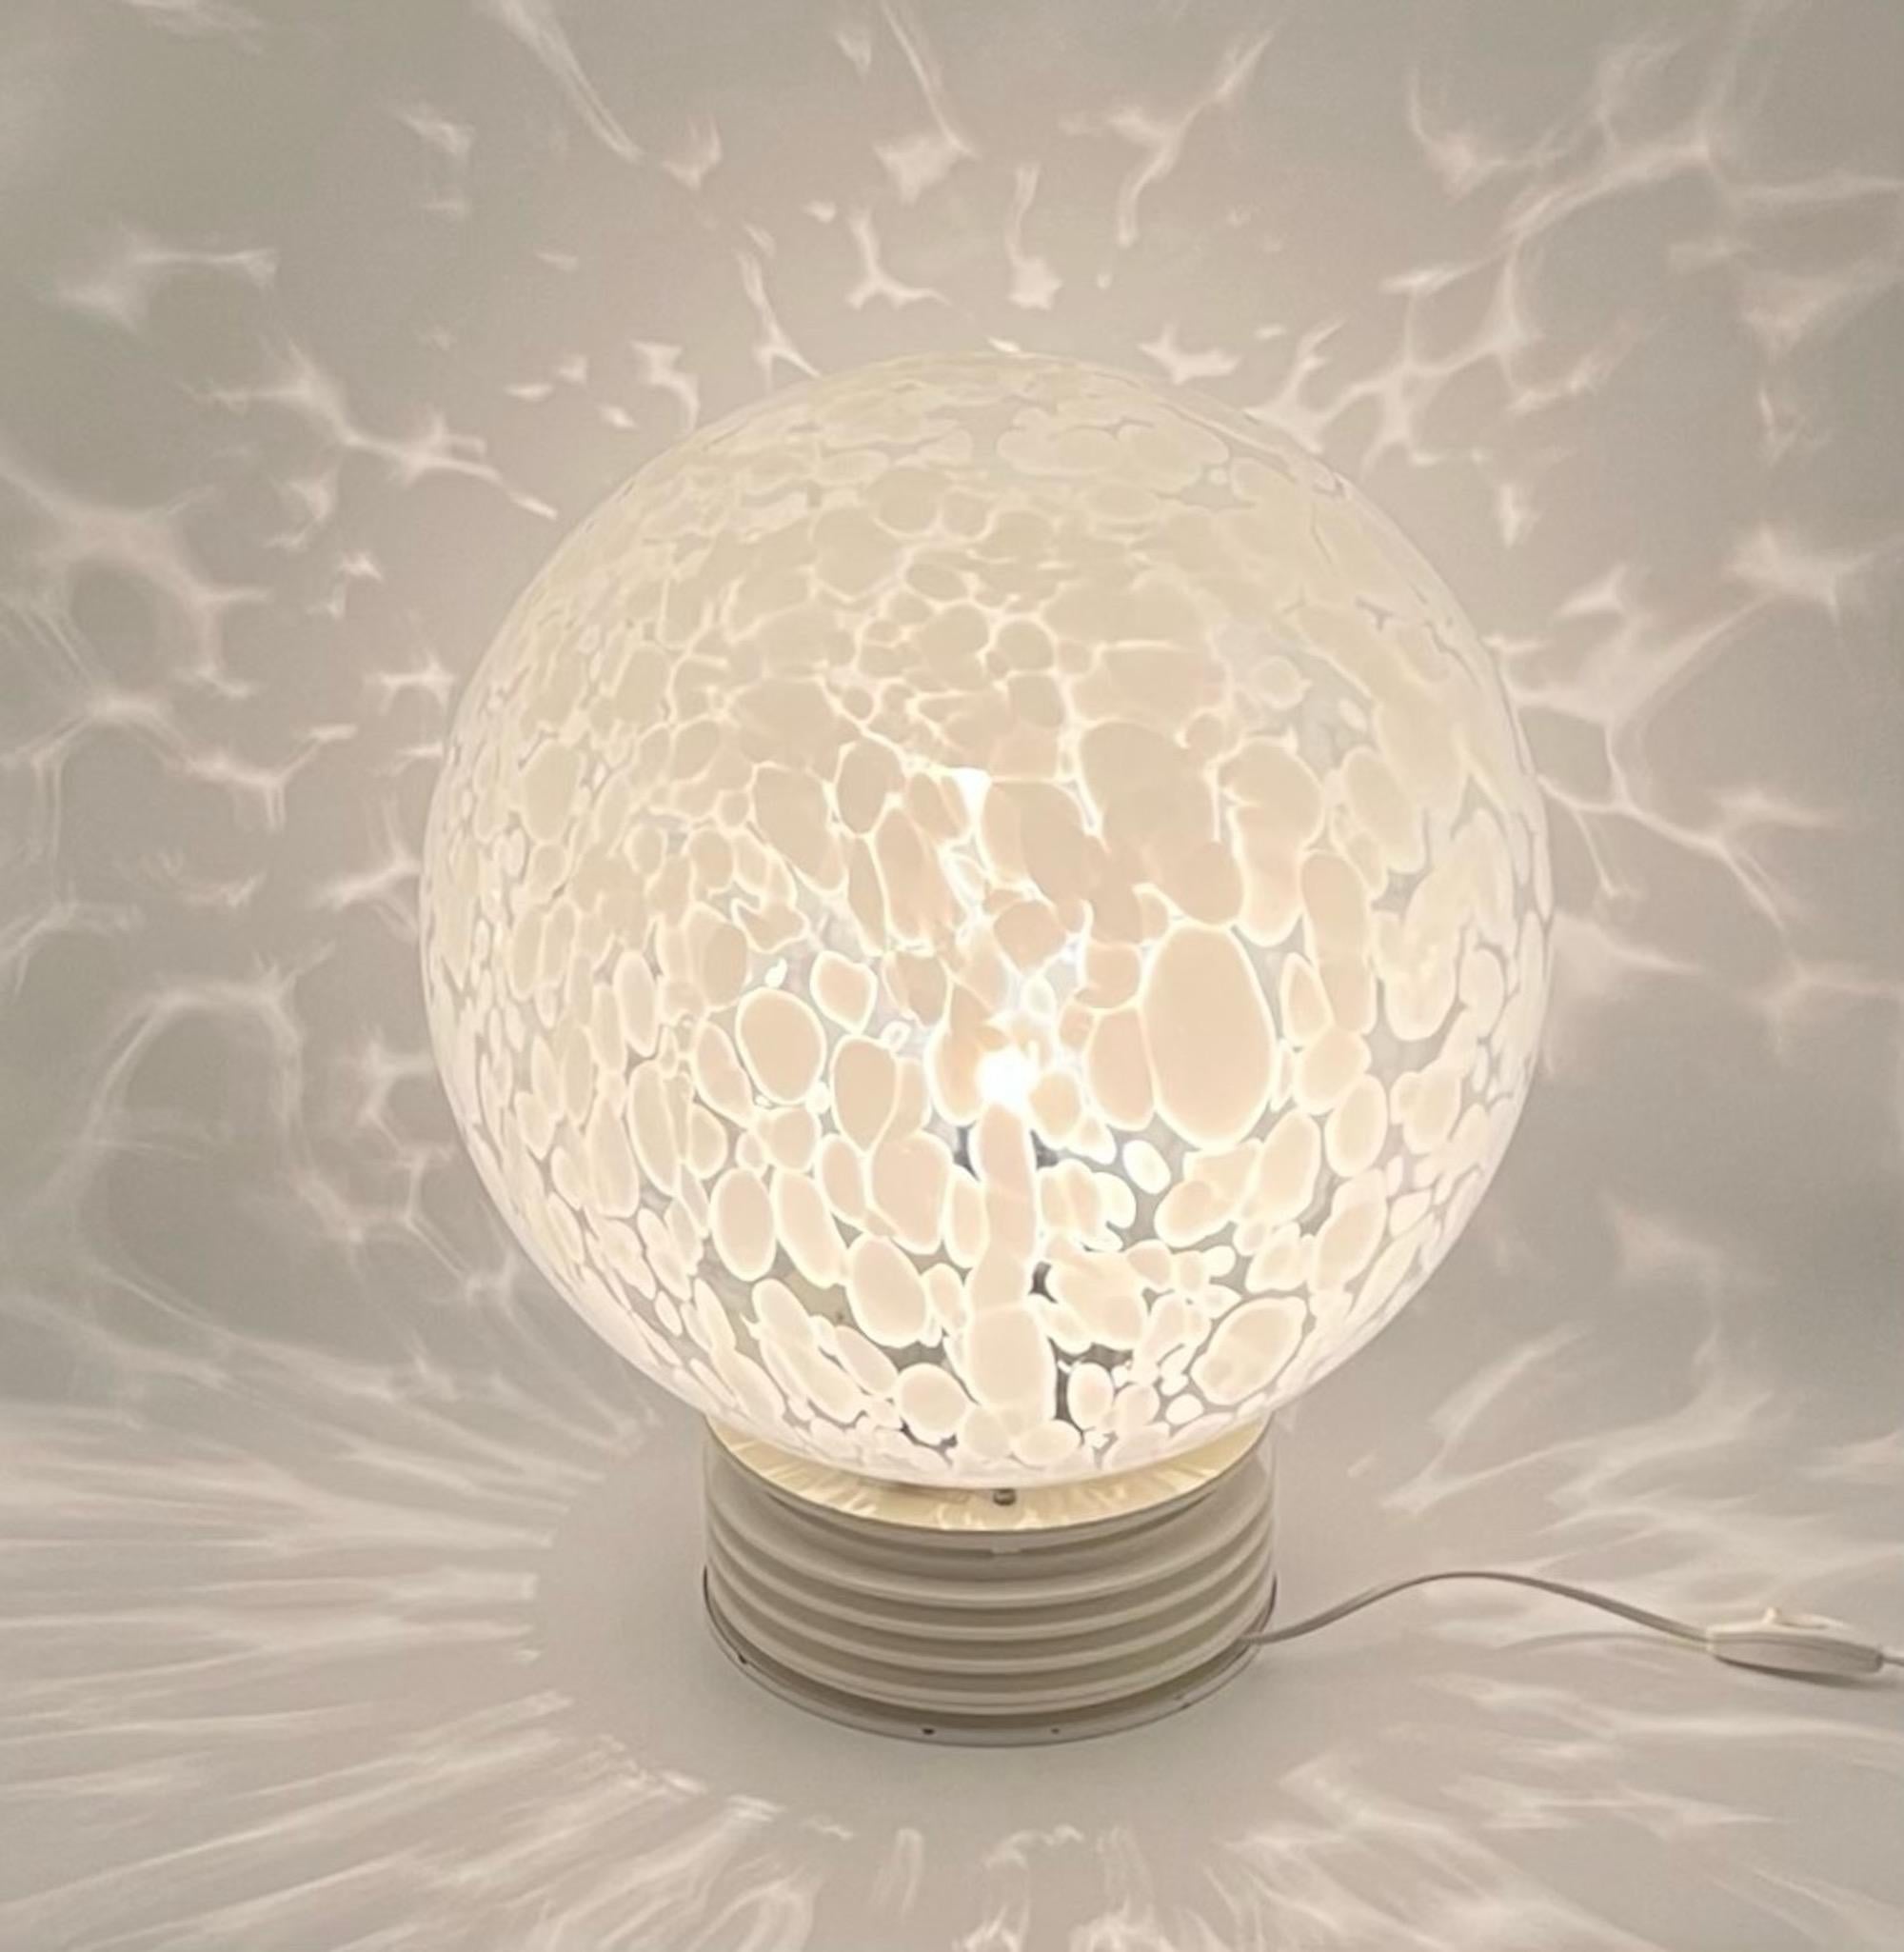 Impressionnant et grand lampadaire ou lampe de table fabriqué à la fin des années 80 par F Fabbian. 

Ce magnifique abat-jour en verre tacheté est doté d'un grand bol en verre de 37 cm de diamètre. La base est constituée d'anneaux en plastique blanc